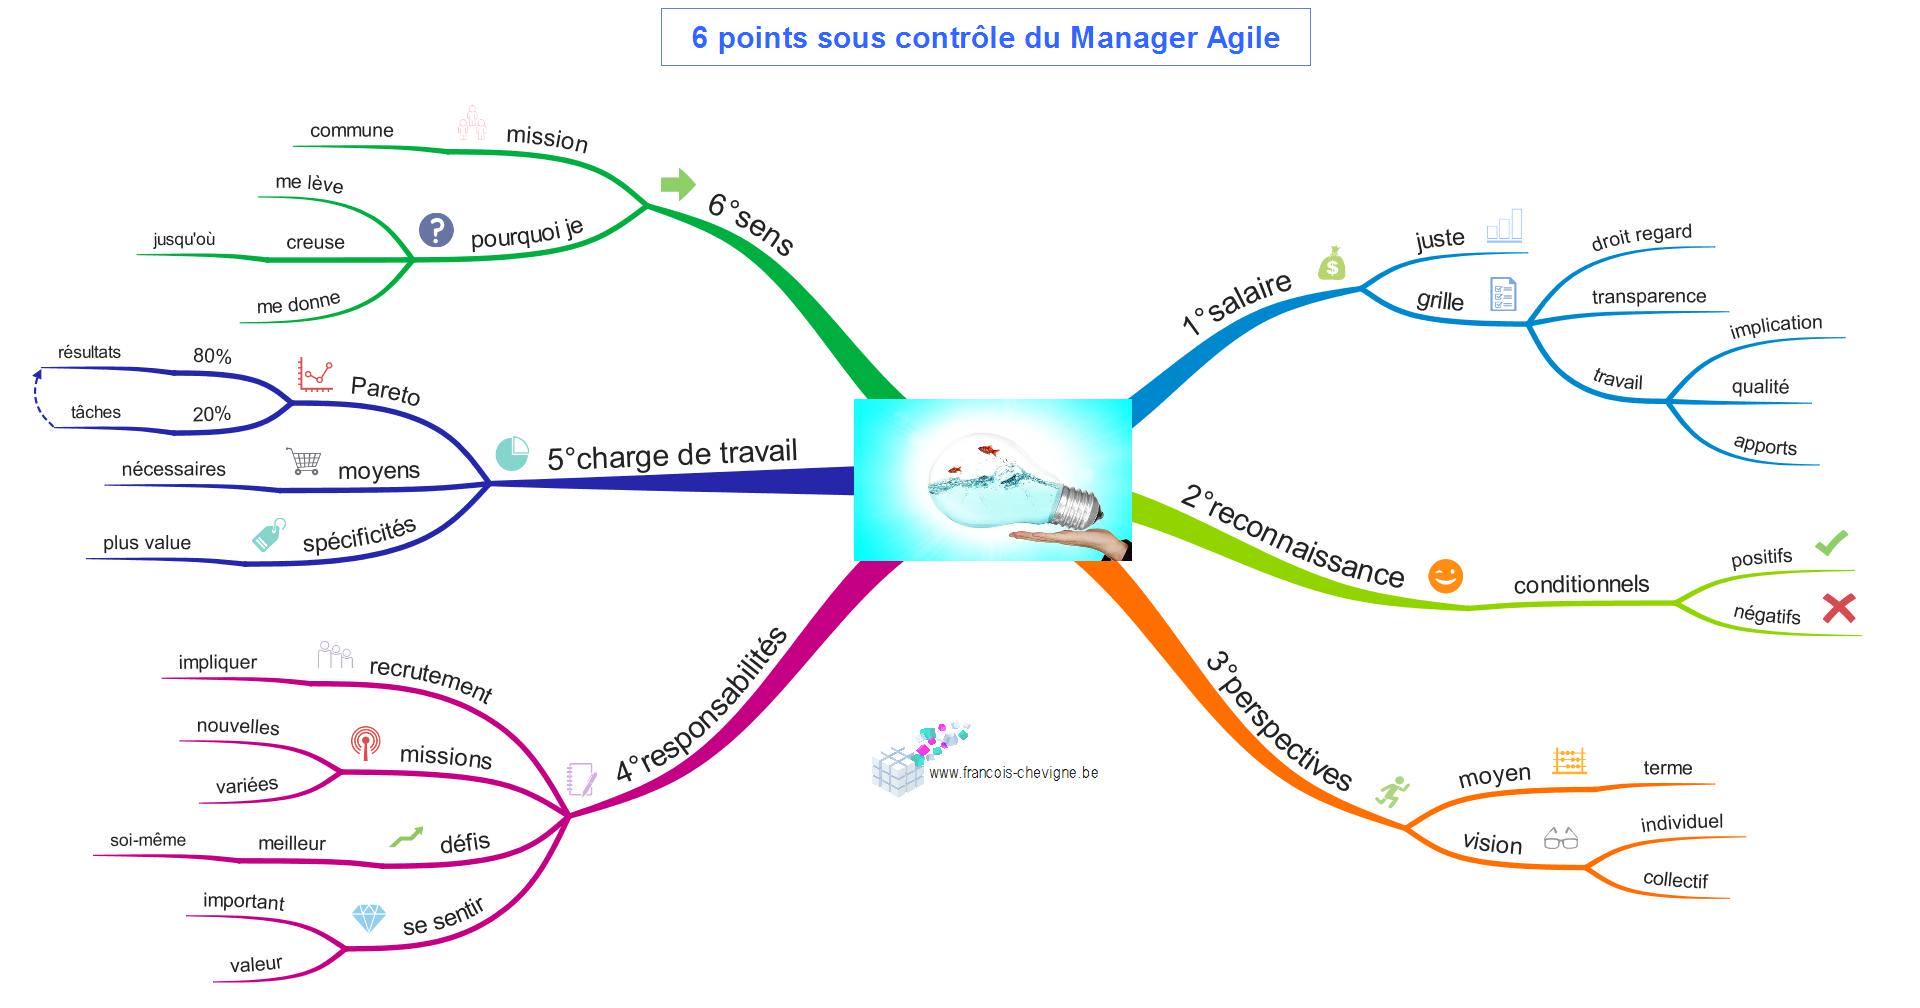 Les 6 premiers points sous contrôle du Manager Agile